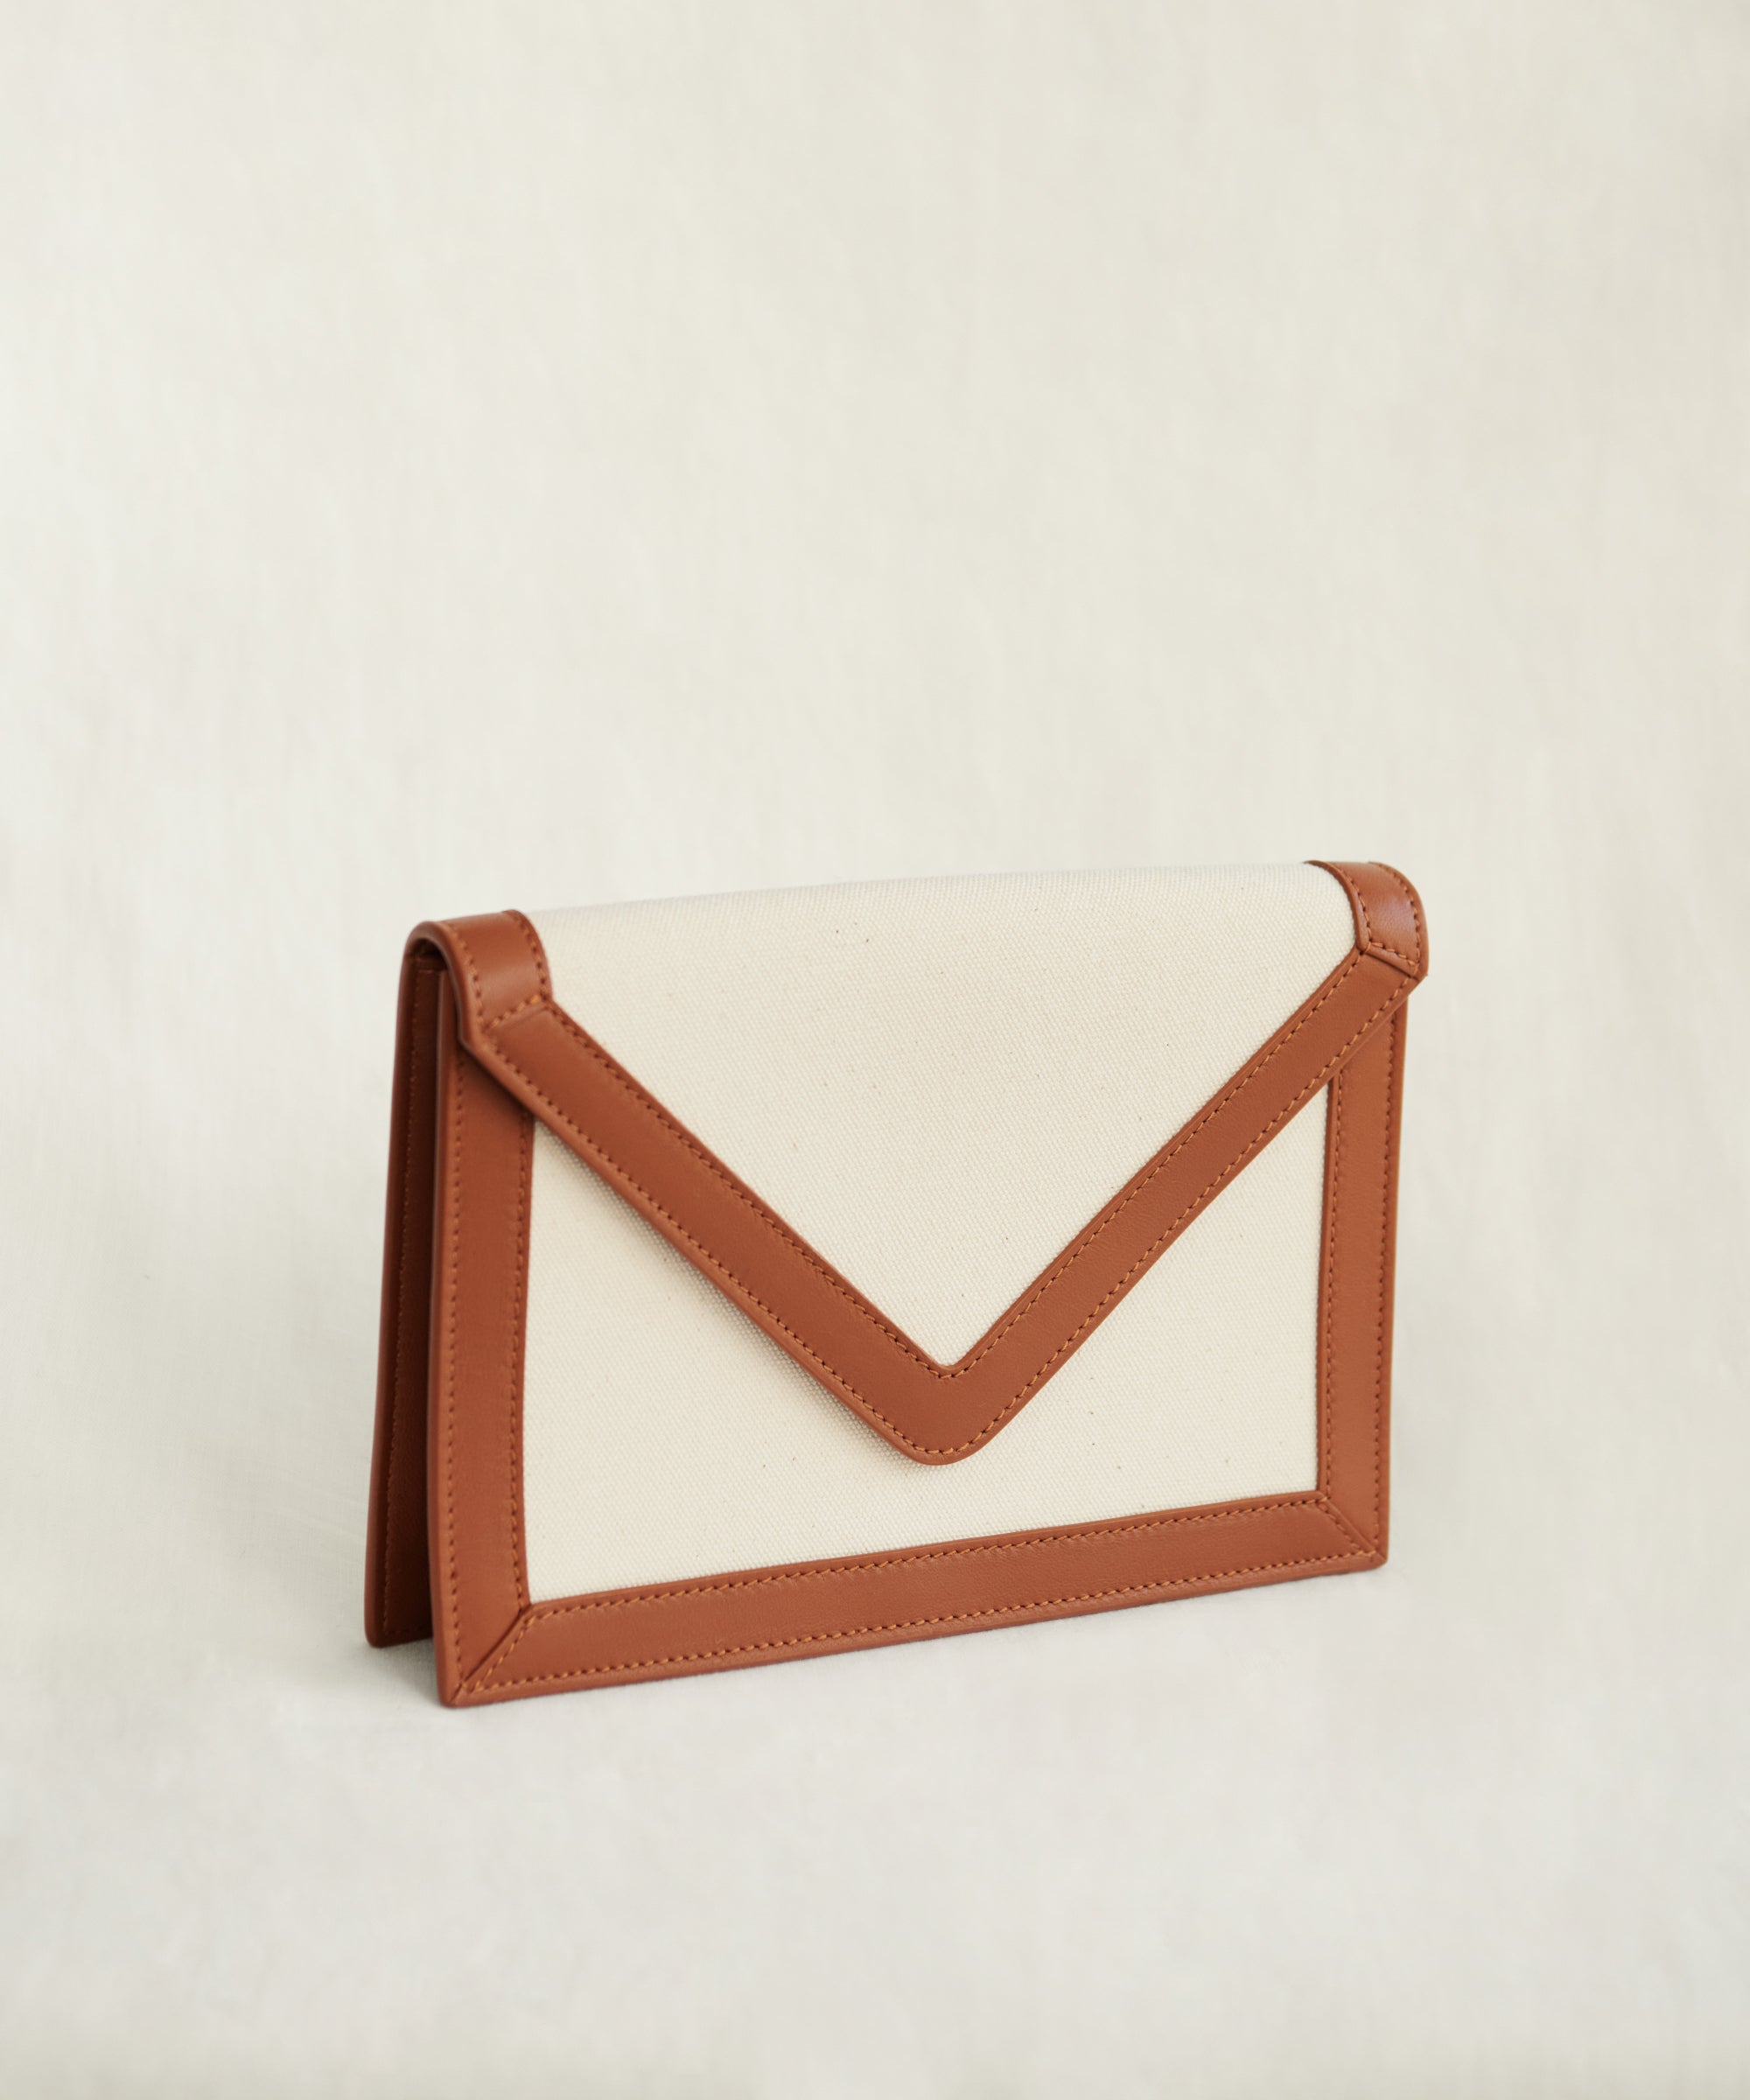 Saint Laurent Uptown Envelope Leather Clutch